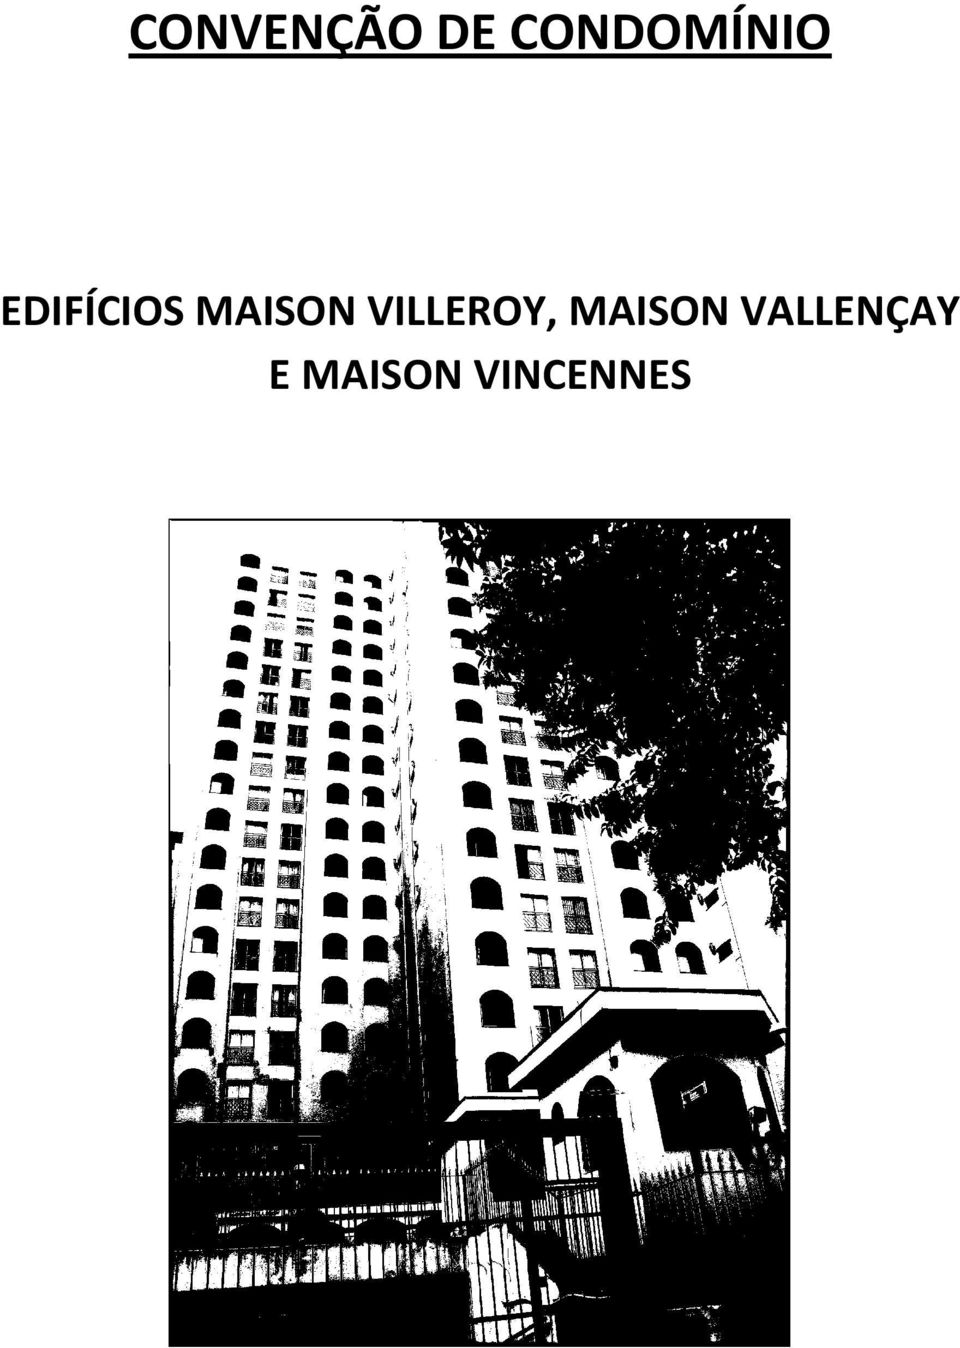 MAISON VILLEROY,